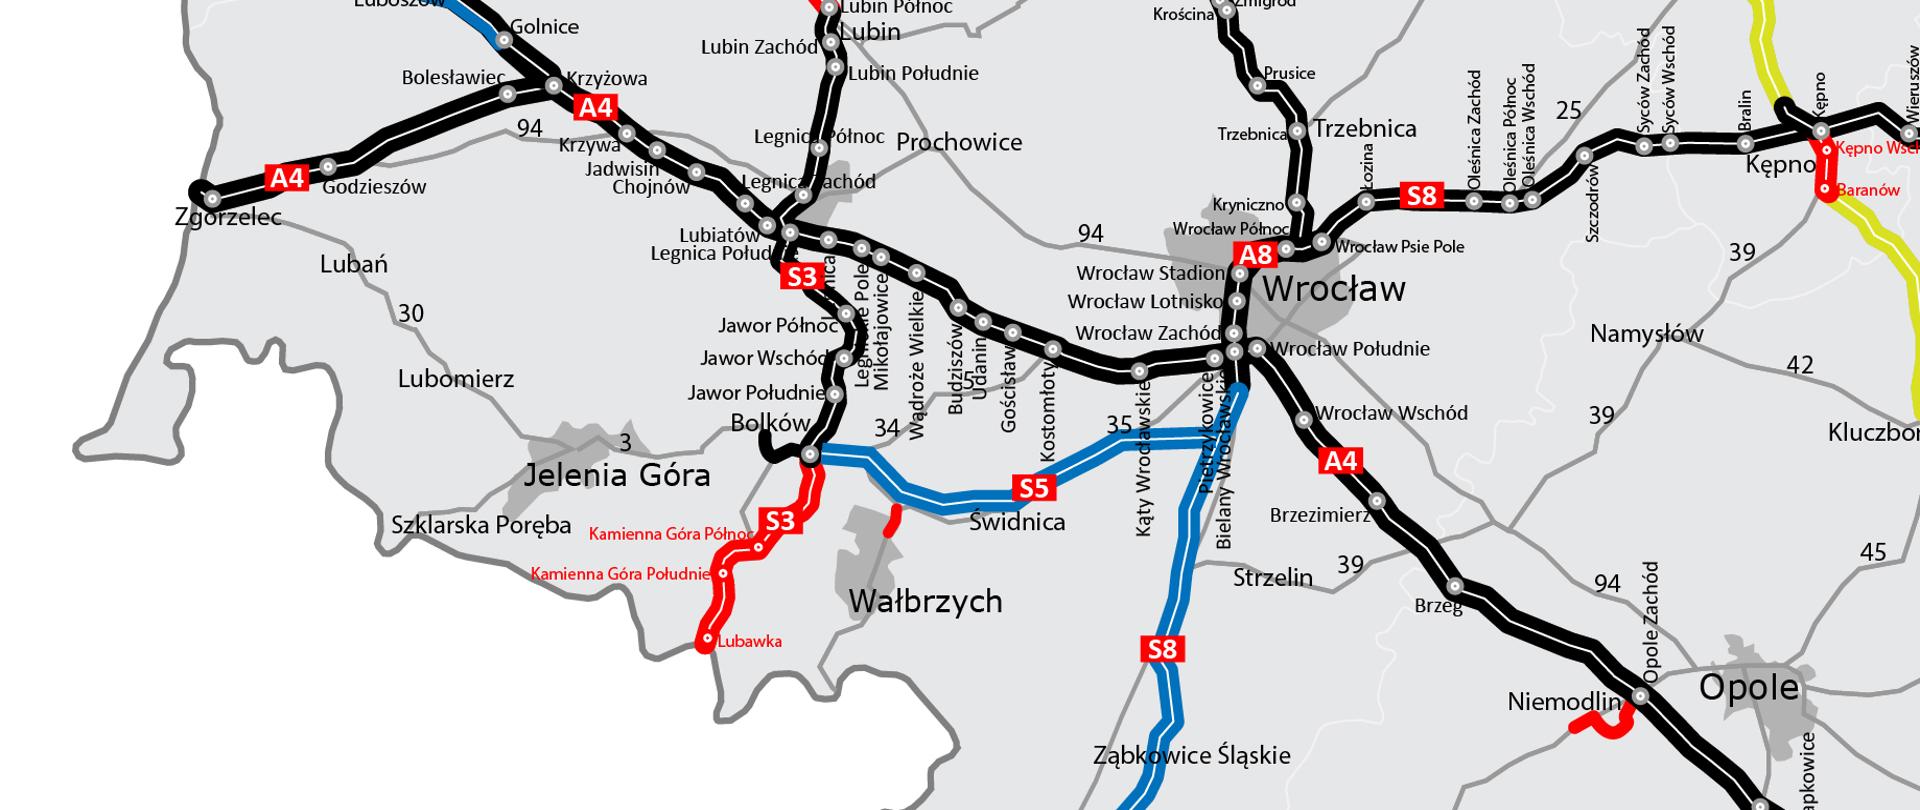 Mapa przedstawia przebieg autostrad i dróg ekspresowych w woj. dolnośląskim